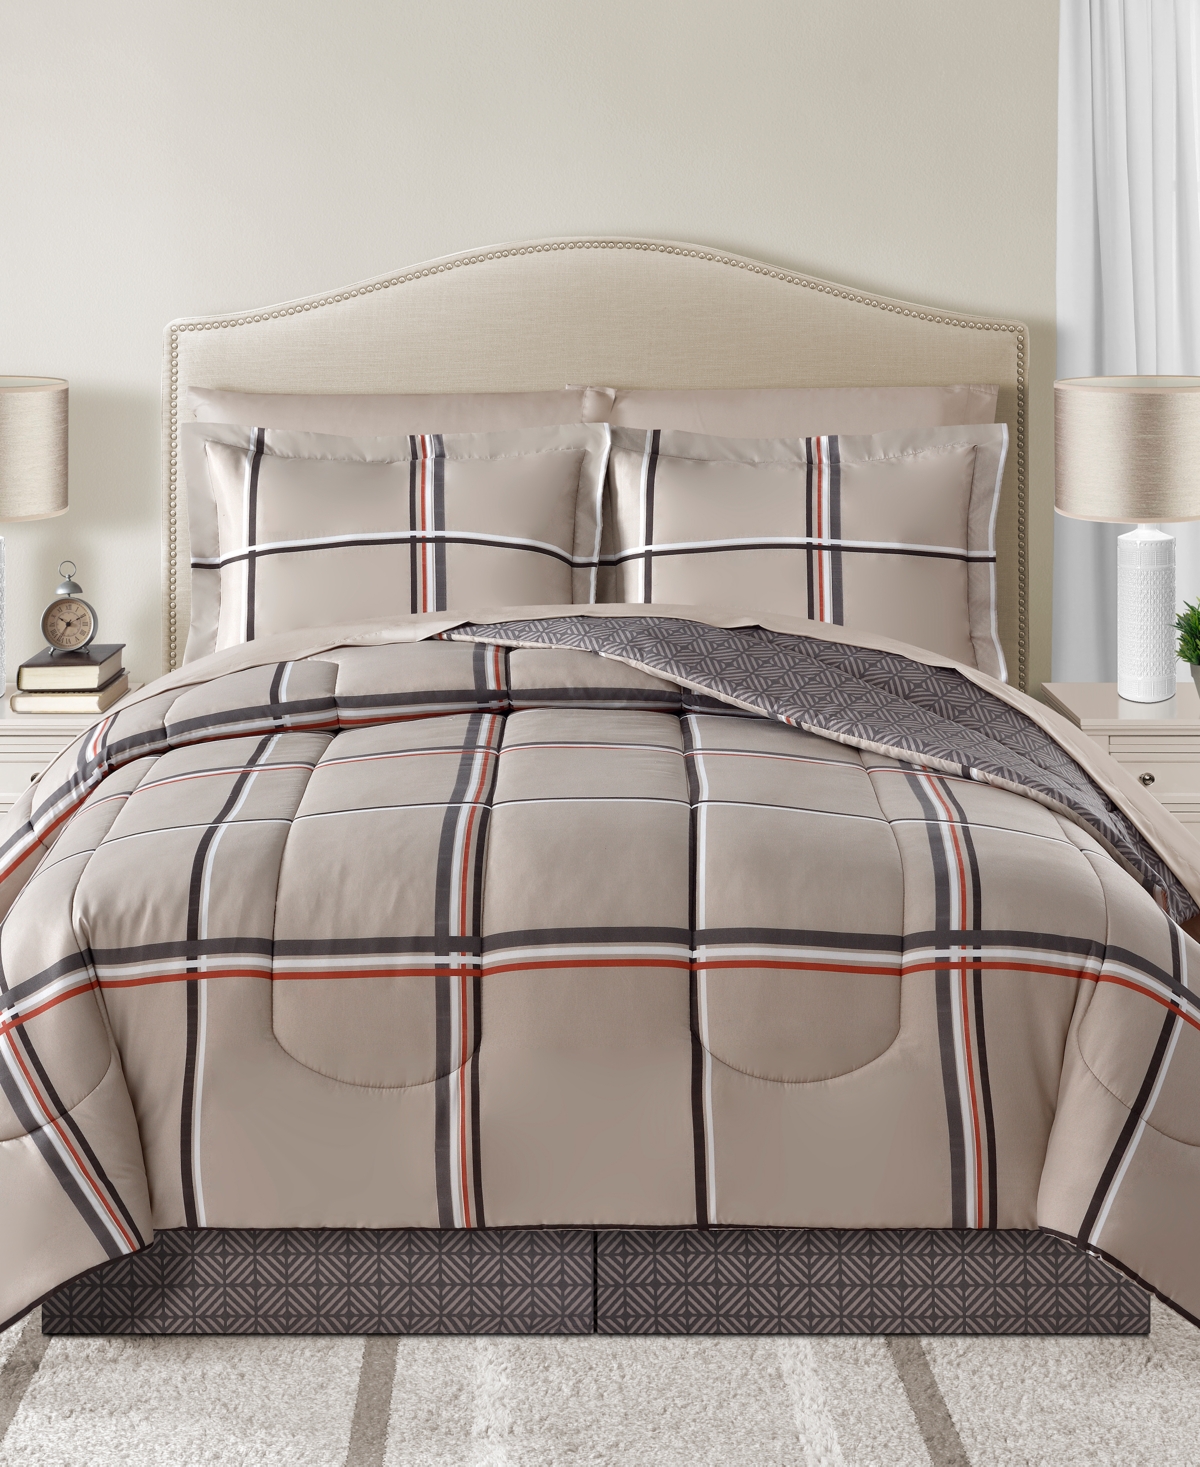 Sunham Cameron Reversible 8 Pc. Comforter Sets Bedding In Tan